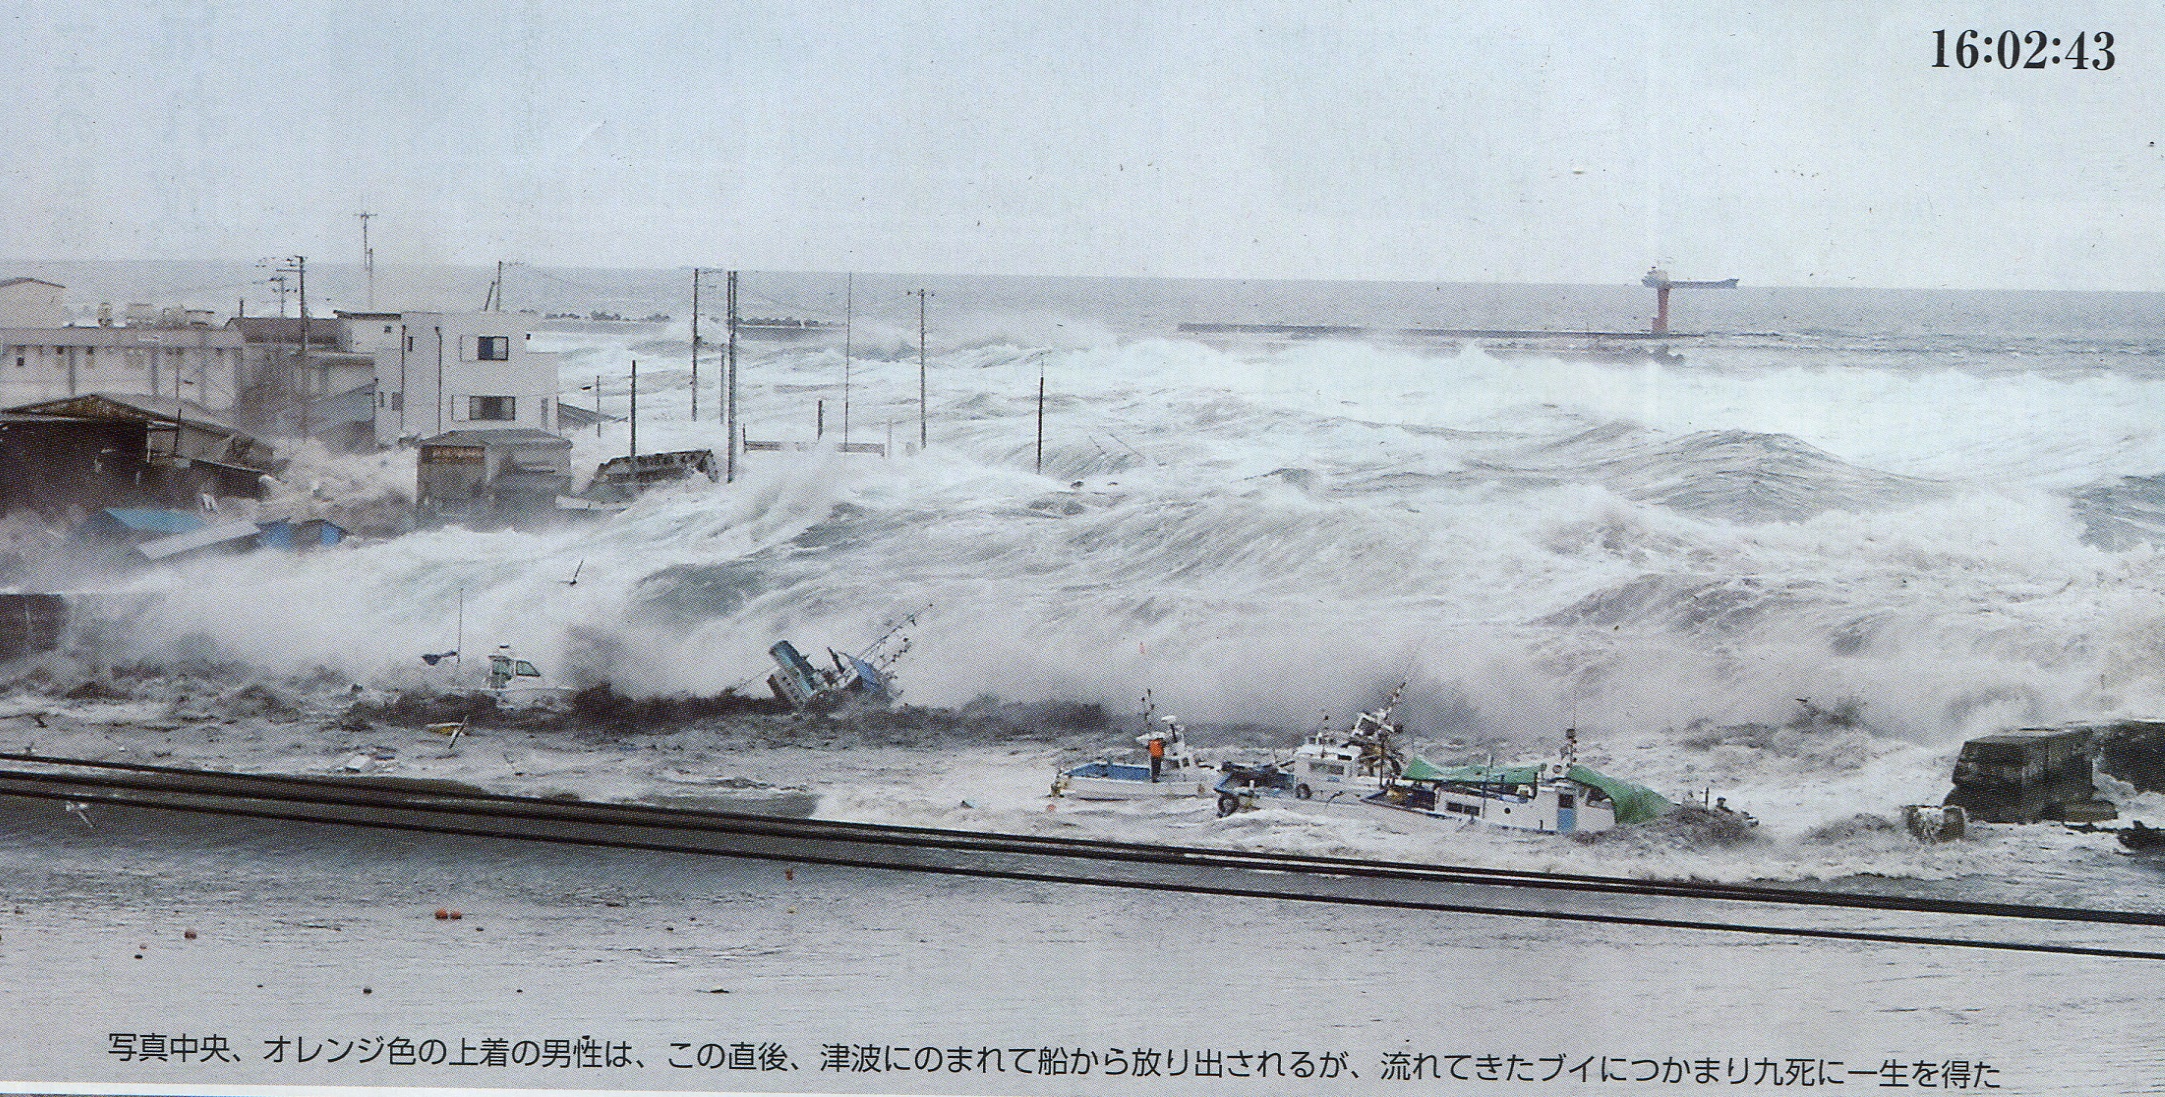 【悲報】東日本大震災で最も絶望的だった画像、満場一致でこれに決まる…  [661852521]\n_1